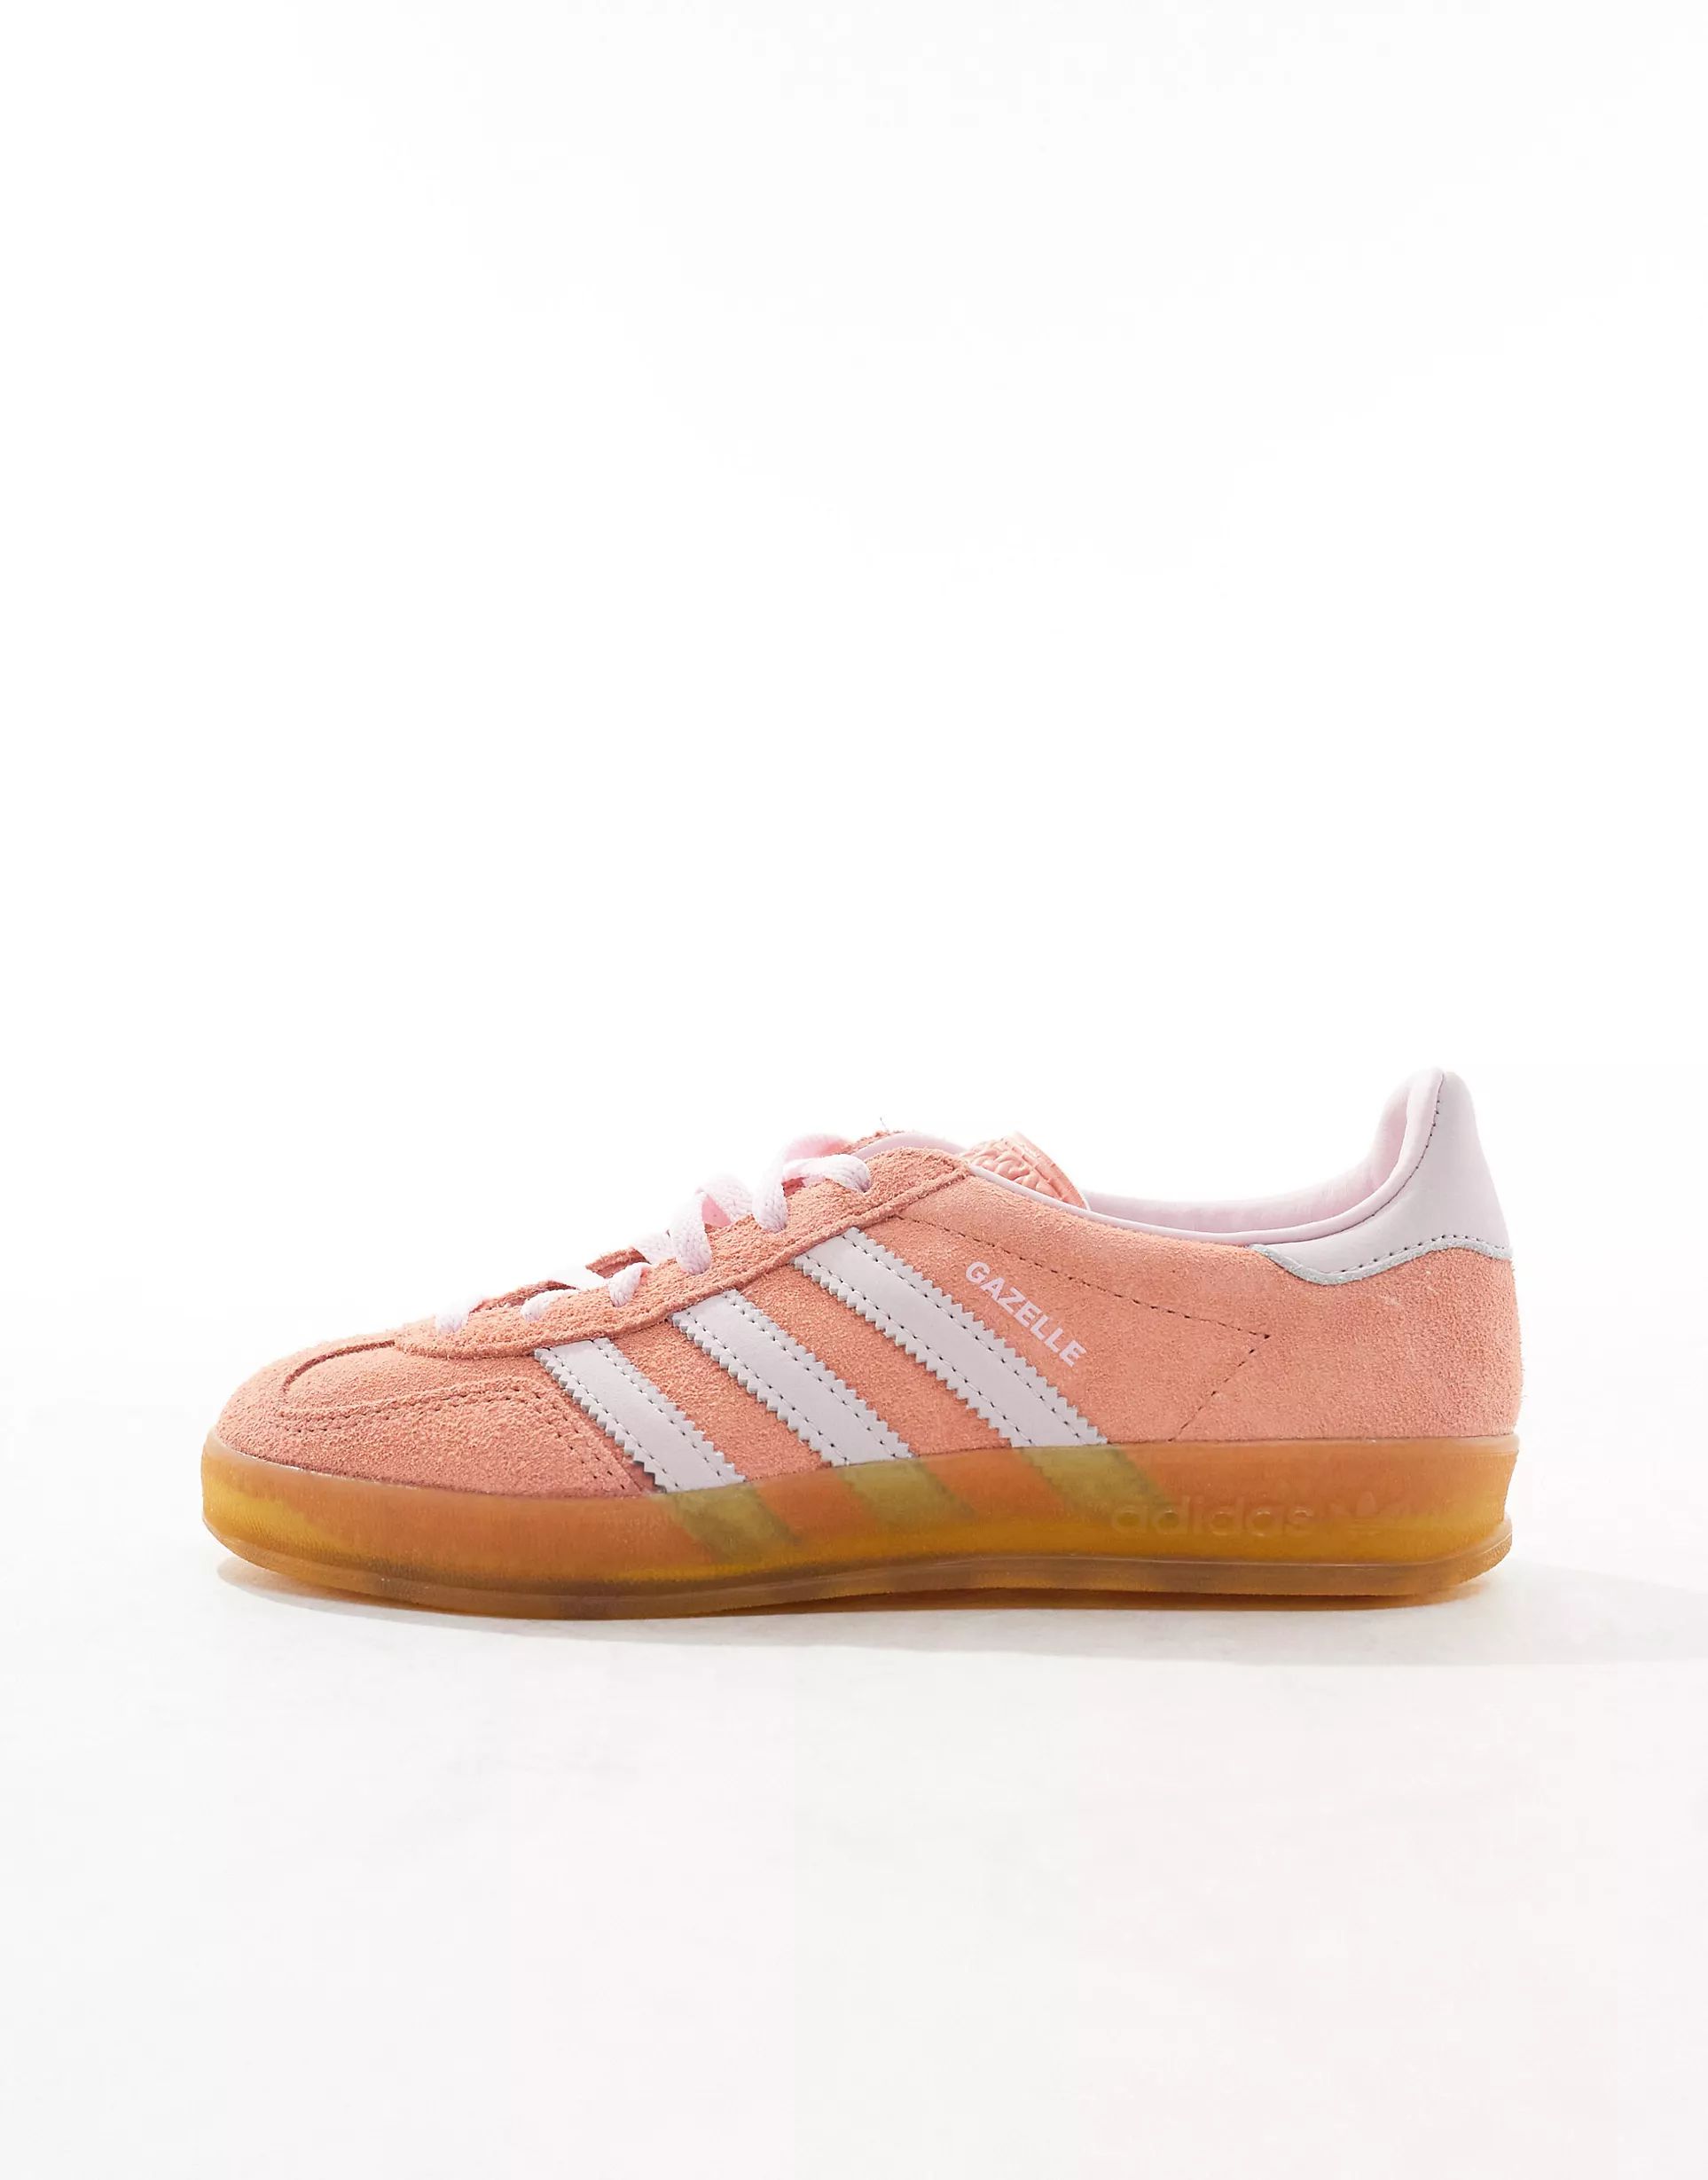 adidas Originals Gazelle Indoor trainers in soft pink | ASOS (Global)